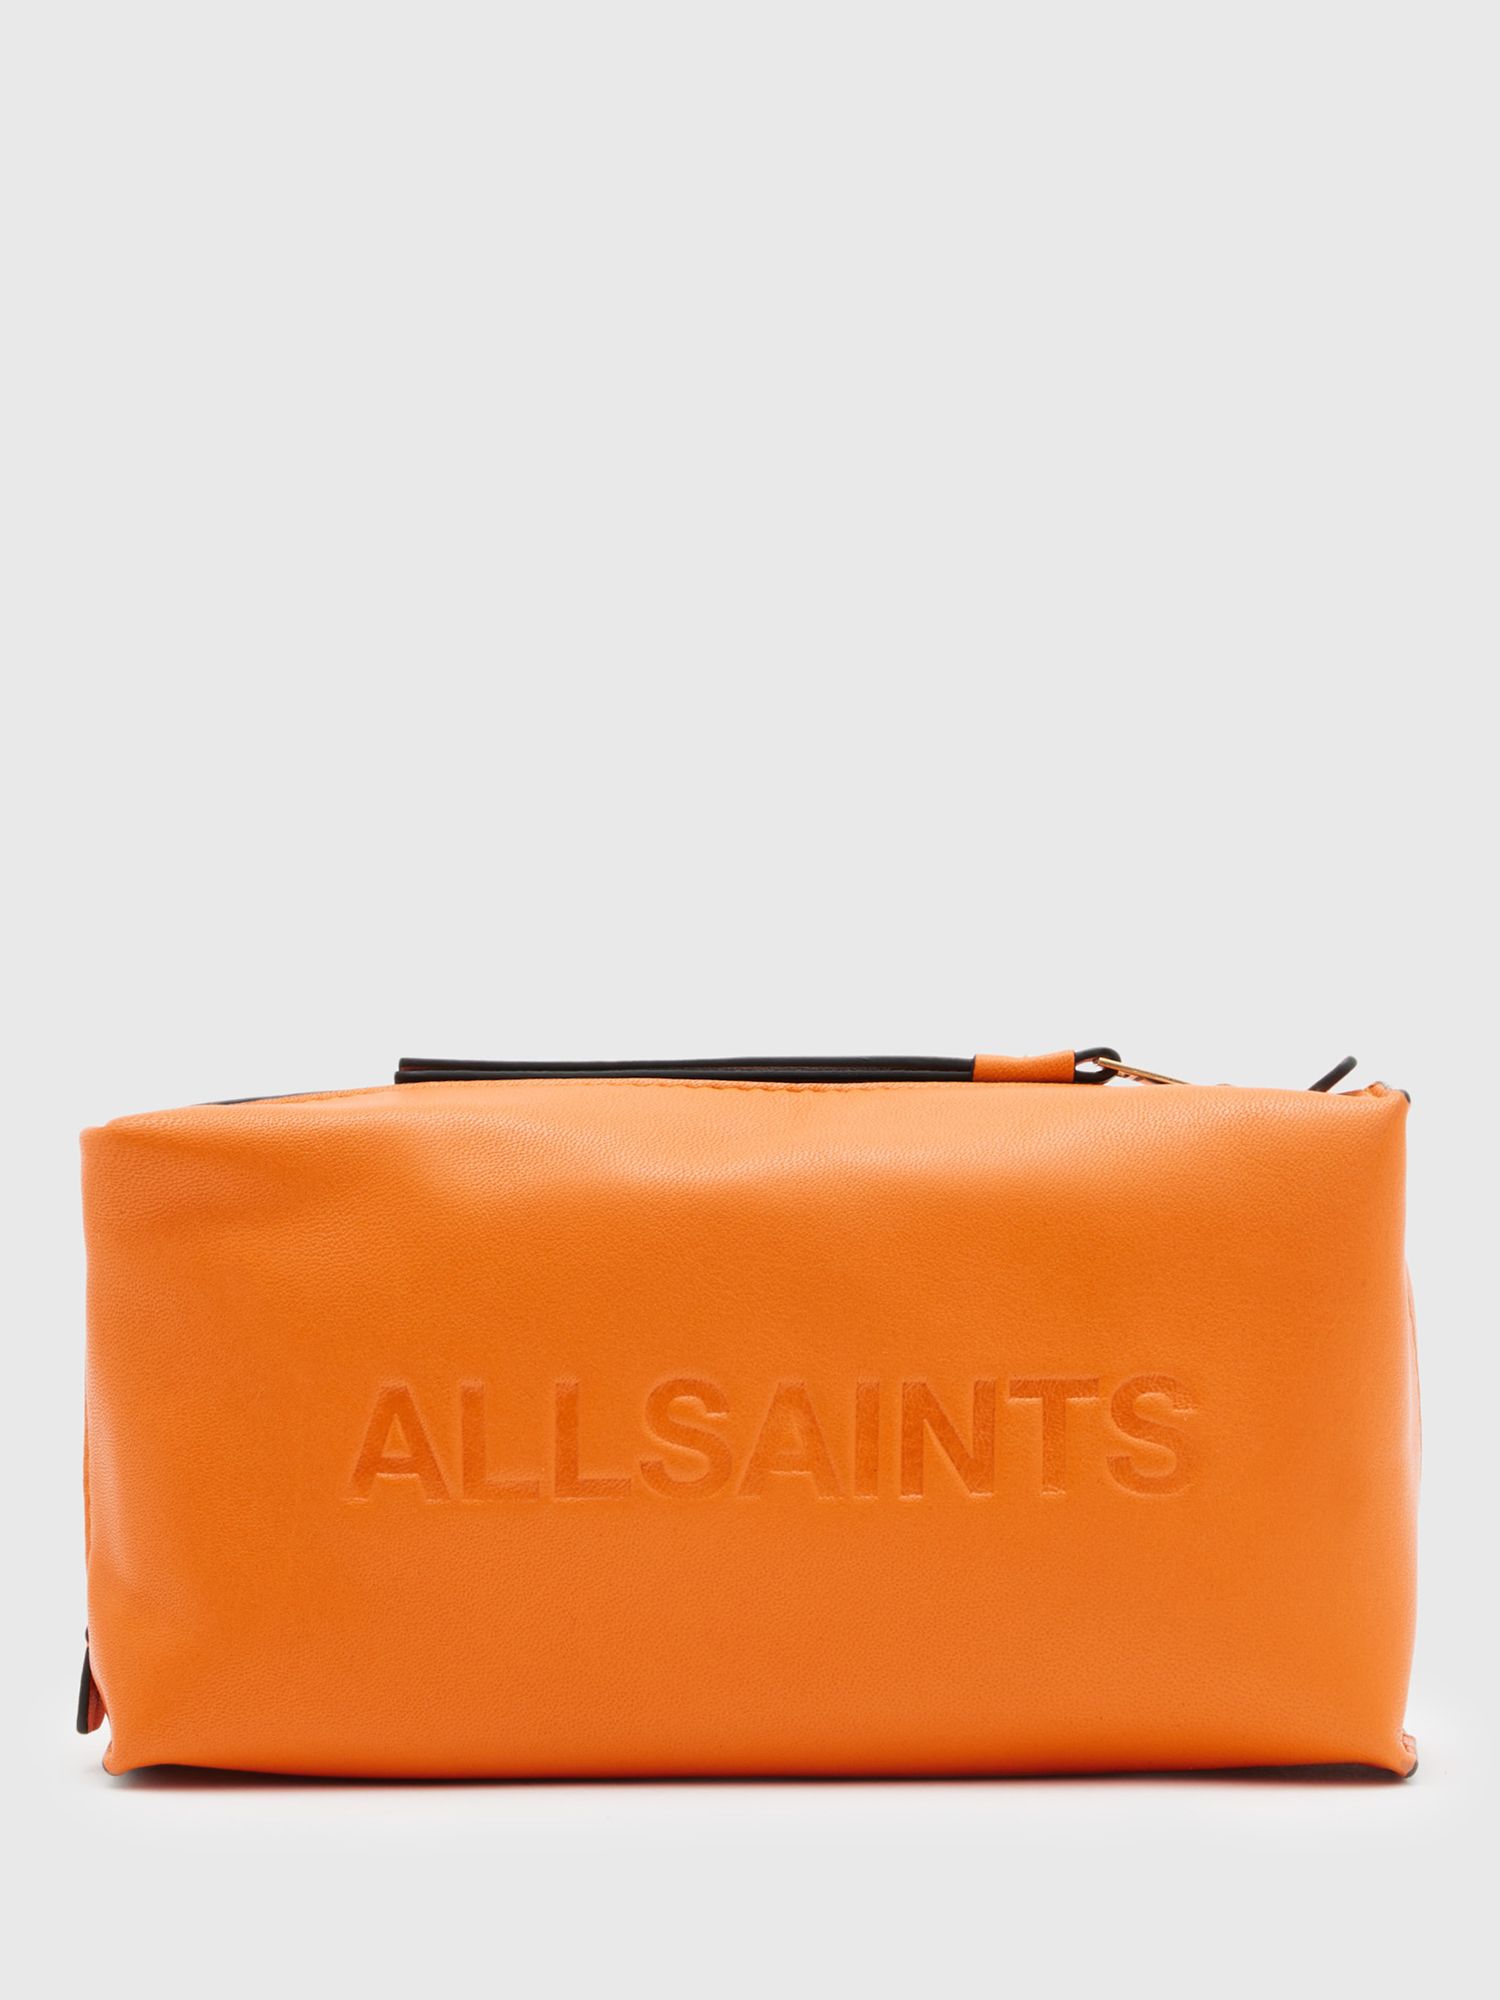 AllSaints Elliotte Leather Pouch, Pyrole Orange at John Lewis & Partners